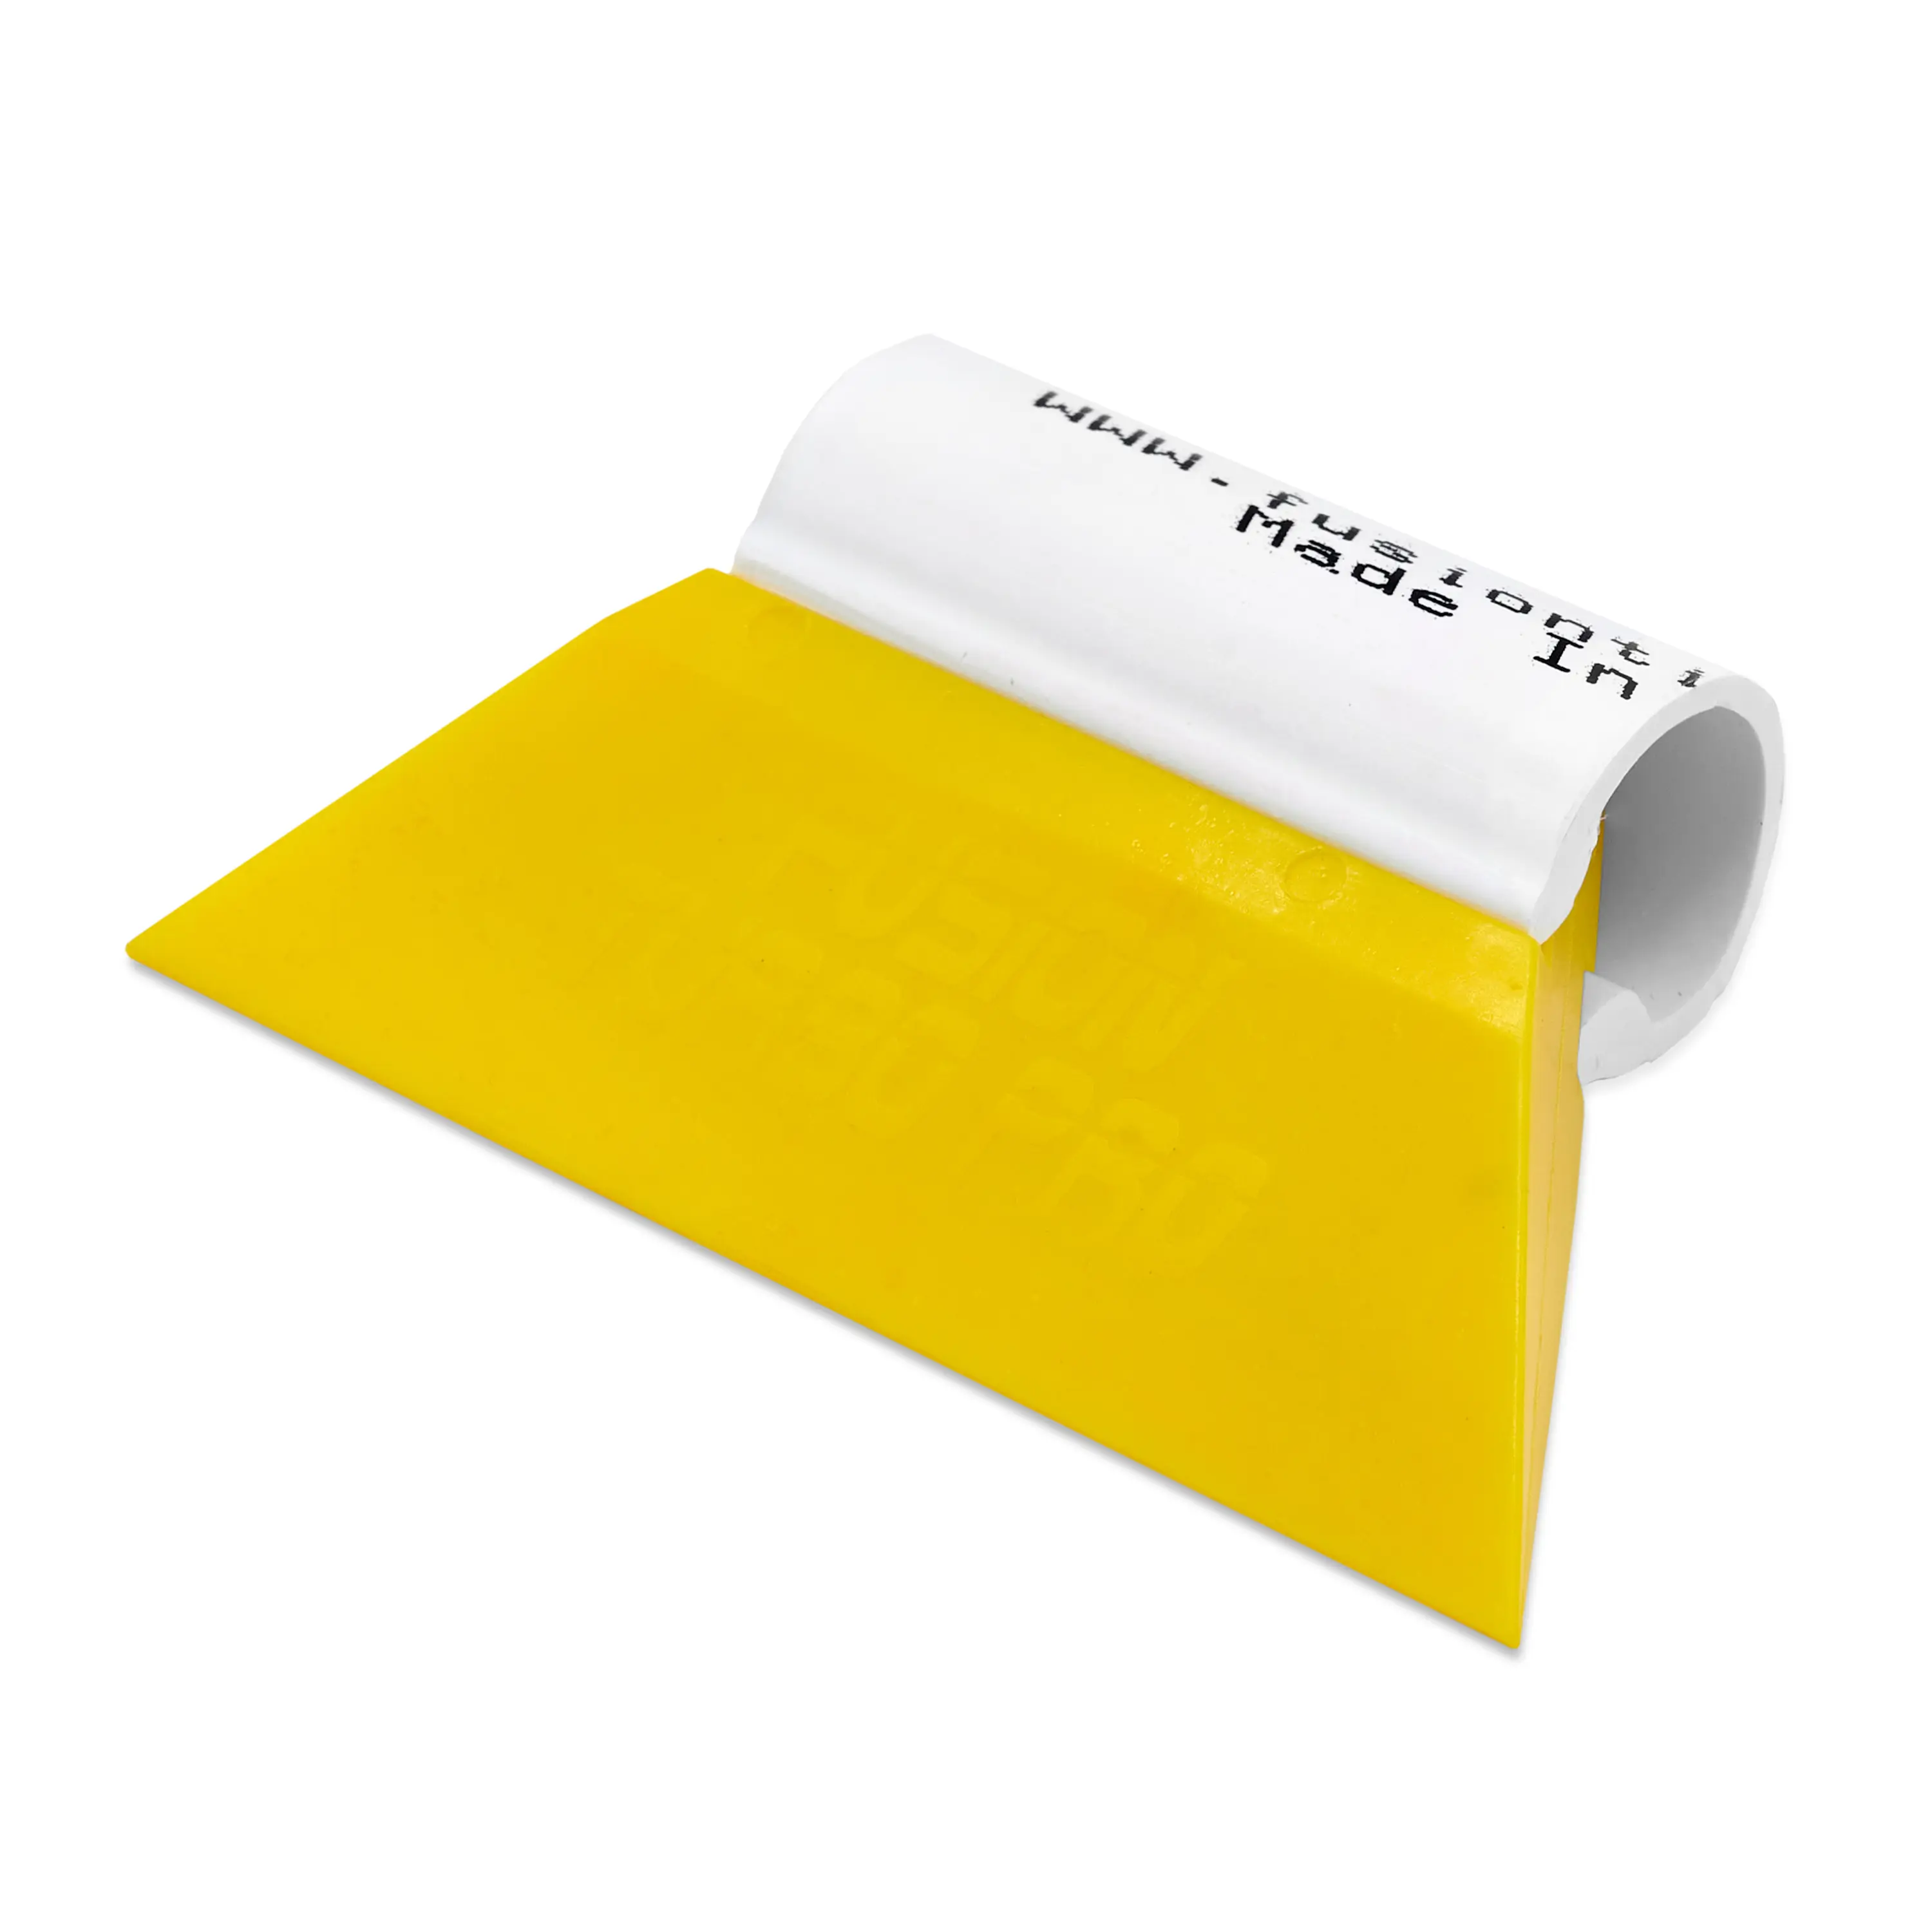 Выгонка FUSION TURBO PRO желтая с пластиковой ручкой, 8,9 см.